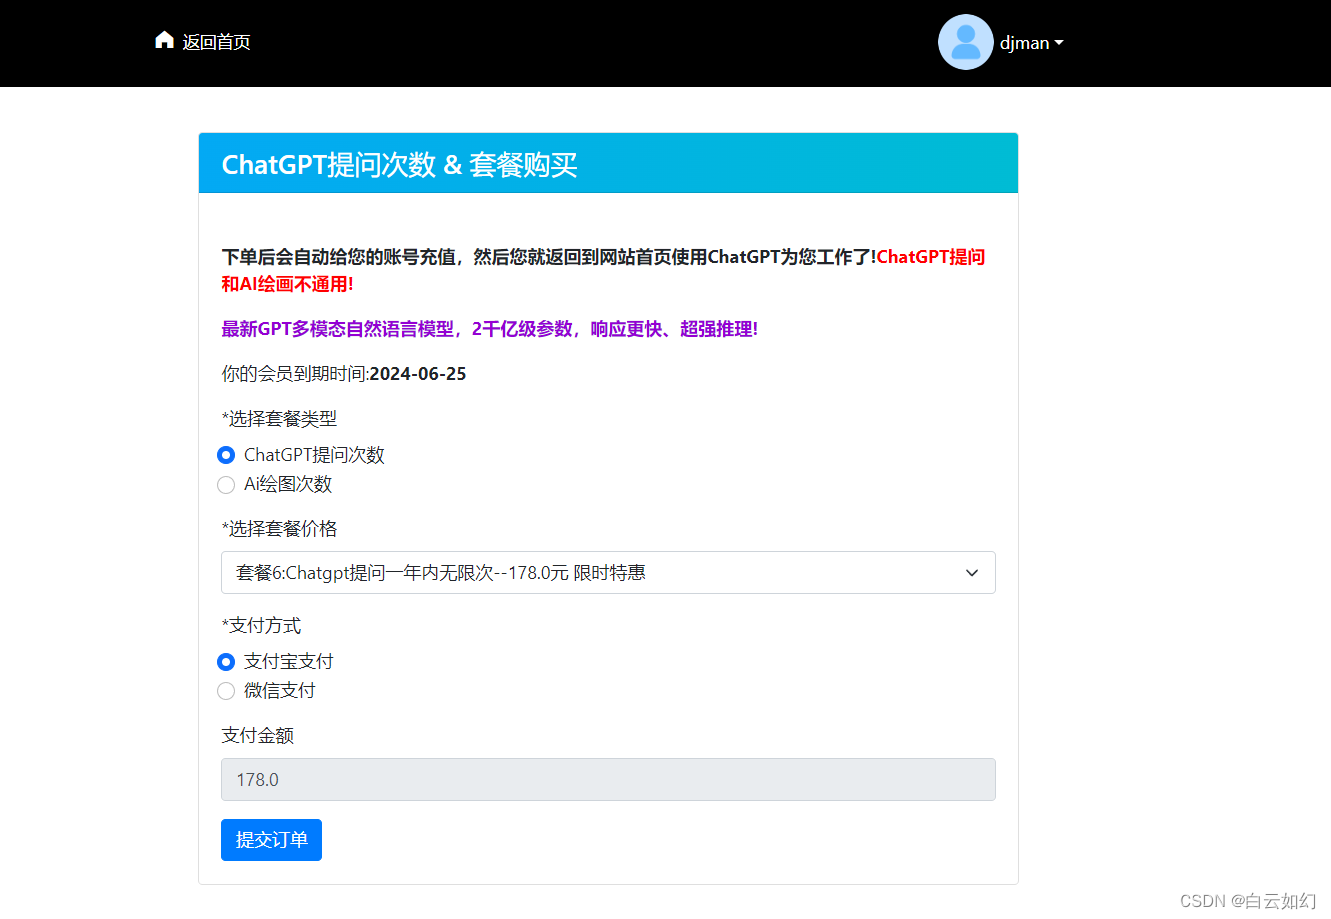 ChatGPT website source code